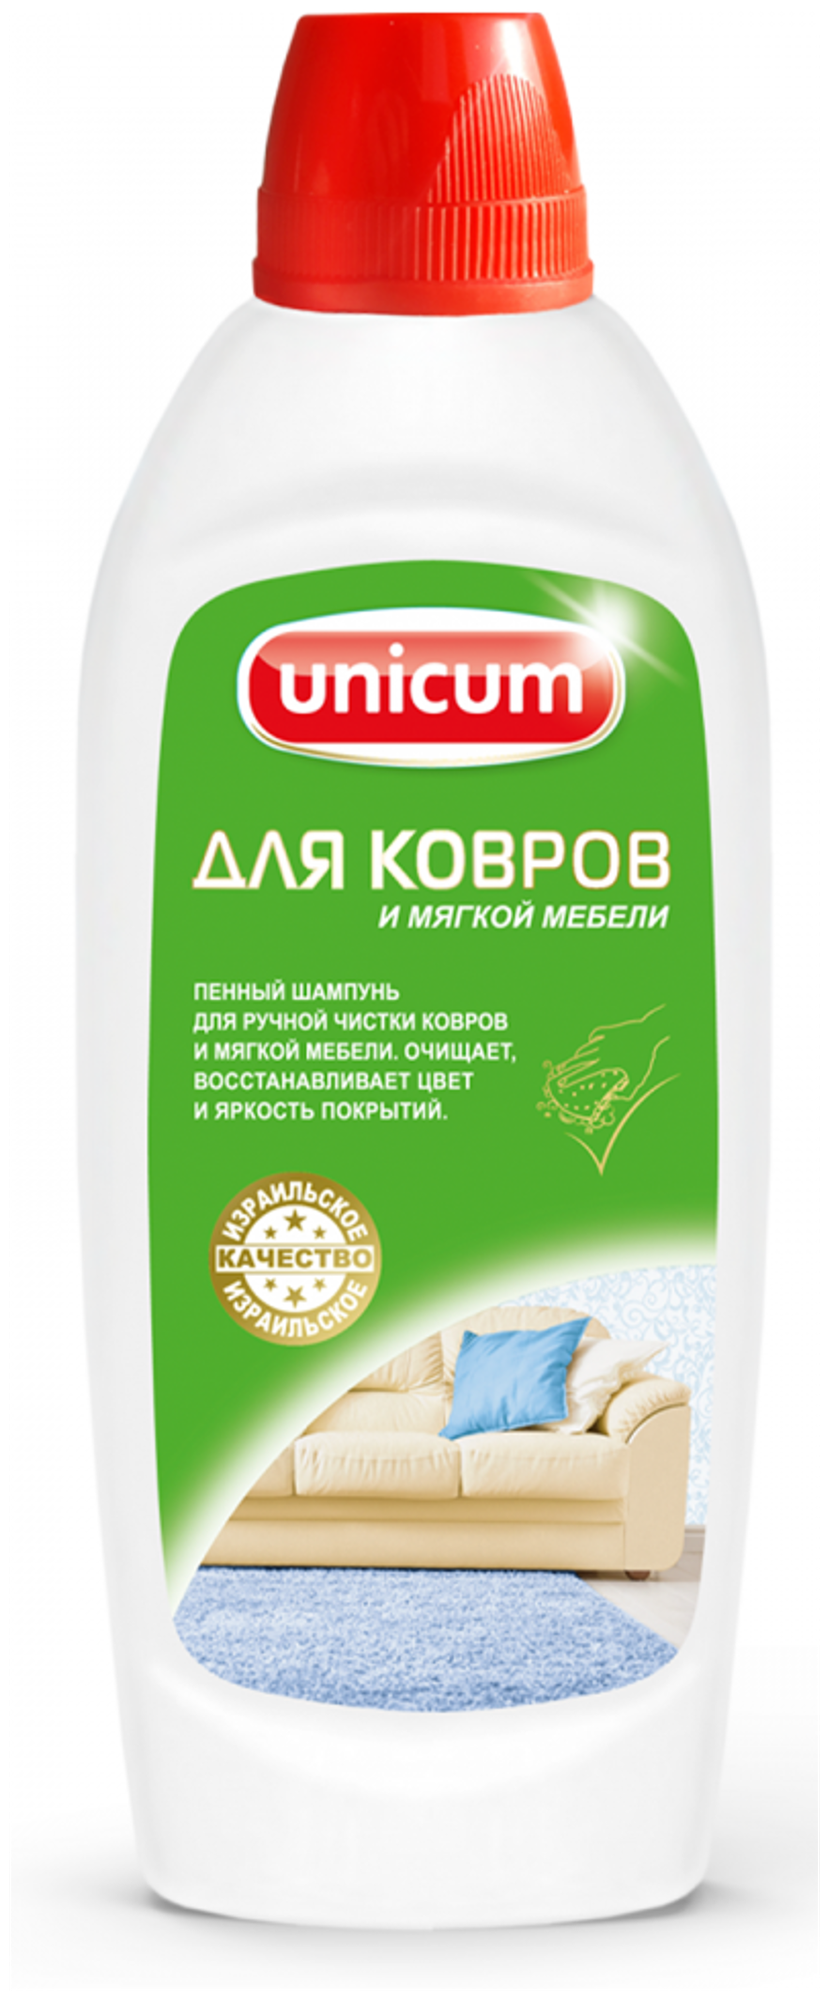 Unicum средство для ручной чистки ковров и мягкой мебели